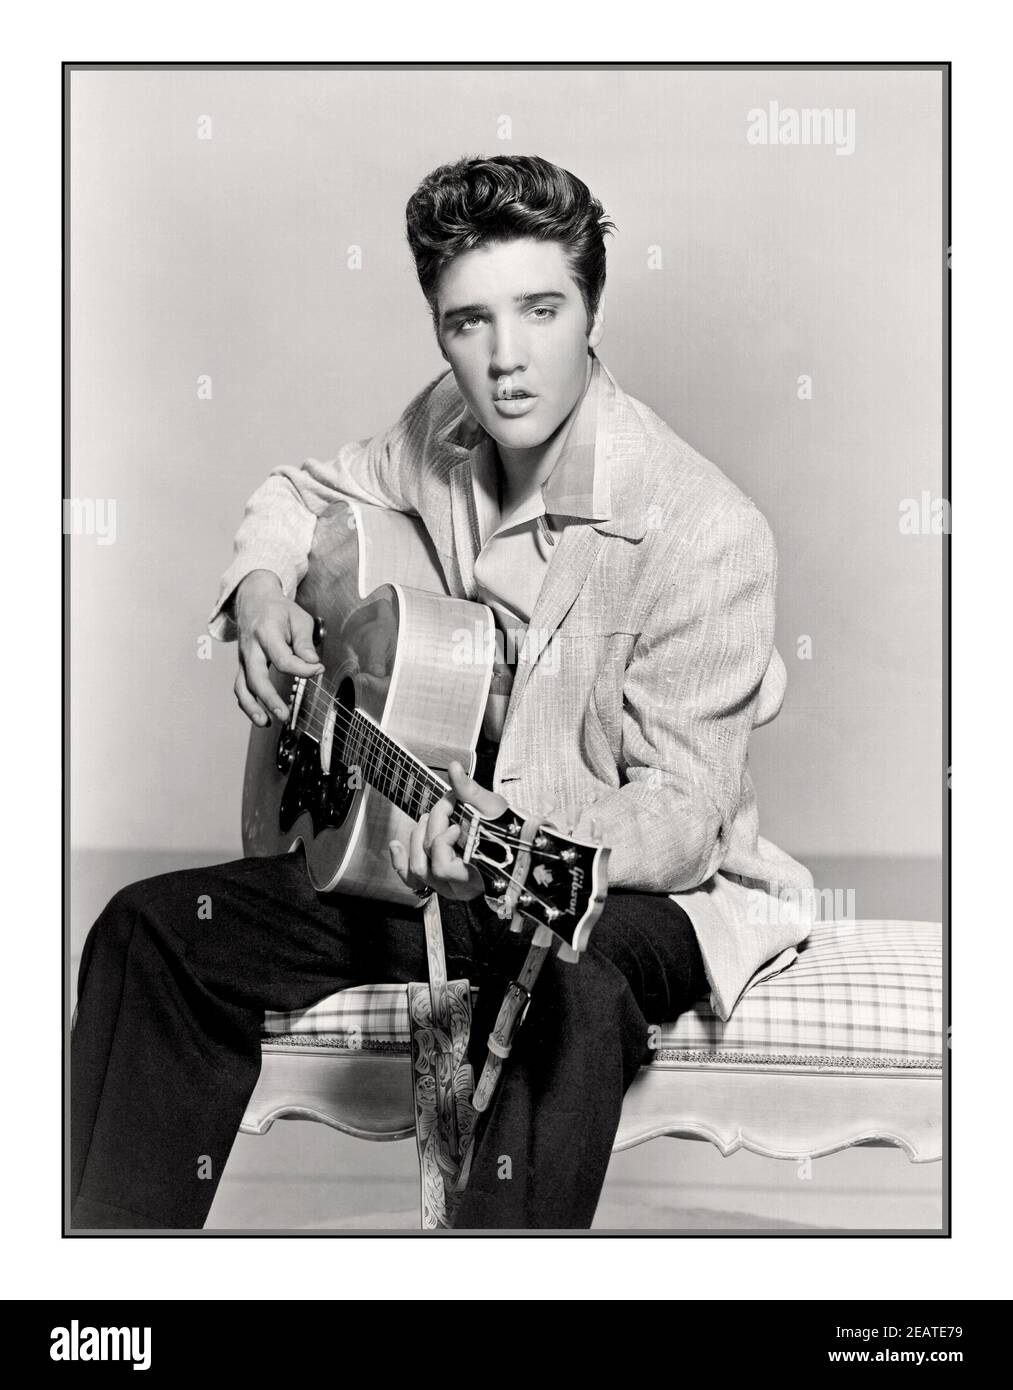 Elvis Presley 1950 s s B&W Publicity Studio still. King of Rock & Roll Holding spielt eine Gitarre, posiert für Werbefoto still America USA. Elvis Aaron Presley (8. Januar 1935 – 16. August 1977), auch einfach als Elvis bekannt, war ein amerikanischer Sänger, Musiker und Schauspieler. Er gilt als eine der bedeutendsten kulturellen Ikonen des 20. Jahrhunderts und wird oft als der "König des Rock and Roll" oder einfach "der König" bezeichnet. Stockfoto